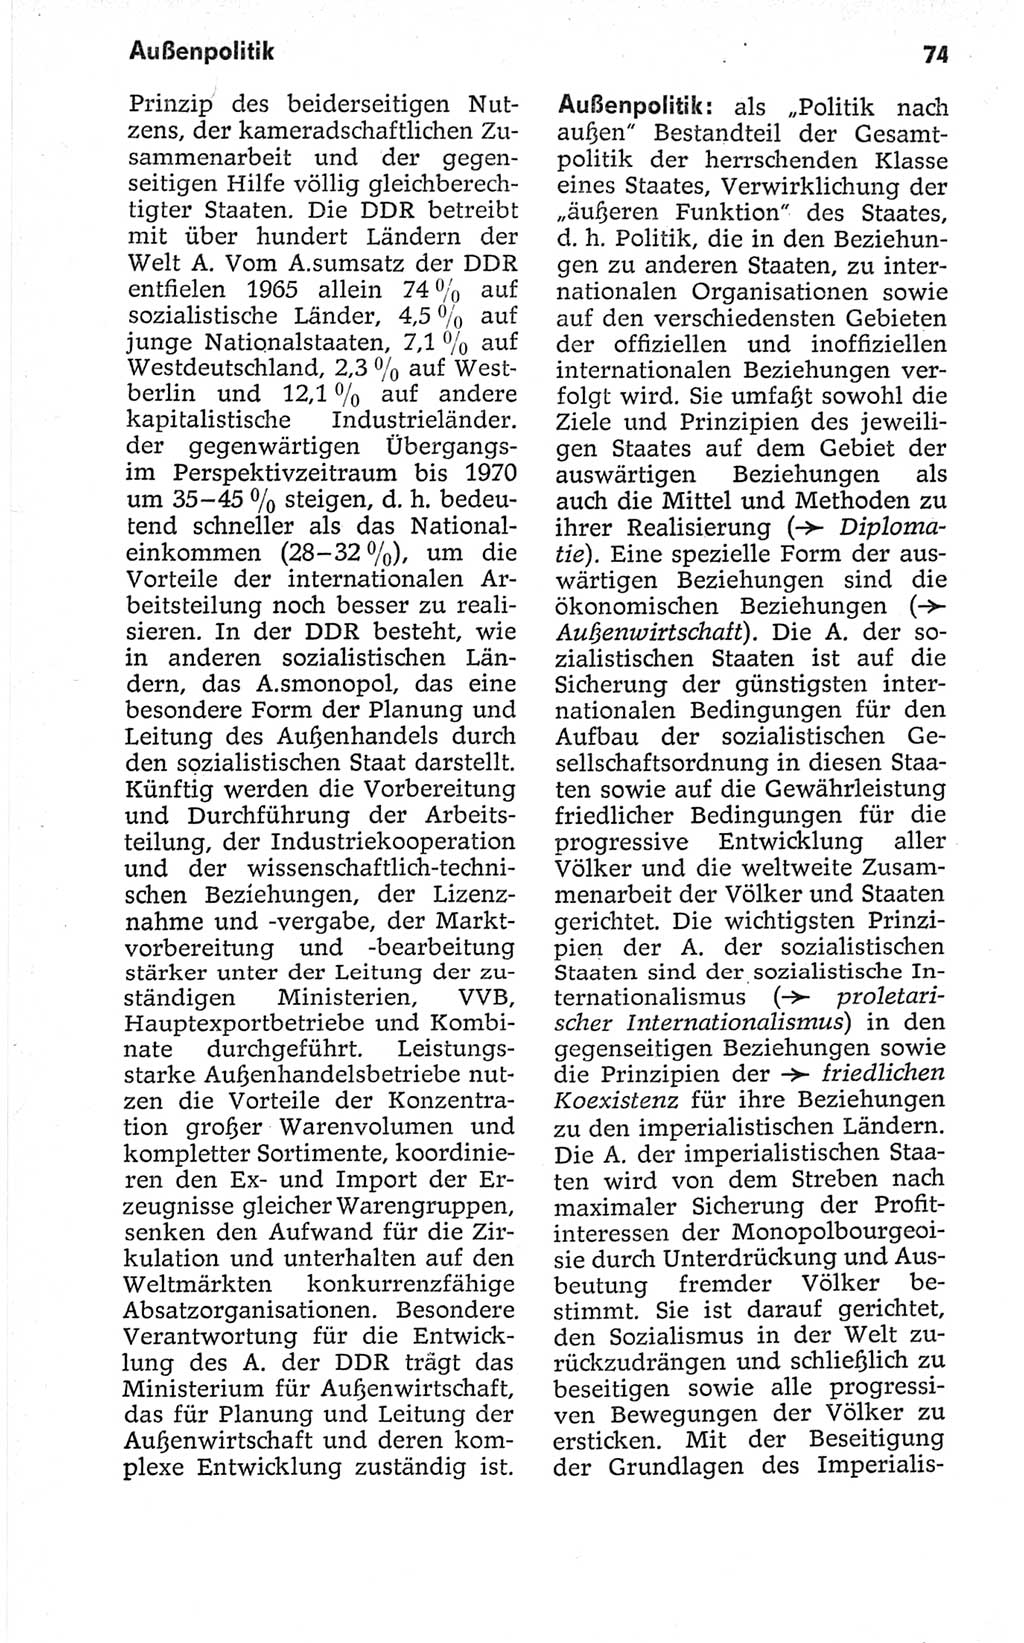 Kleines politisches Wörterbuch [Deutsche Demokratische Republik (DDR)] 1967, Seite 74 (Kl. pol. Wb. DDR 1967, S. 74)